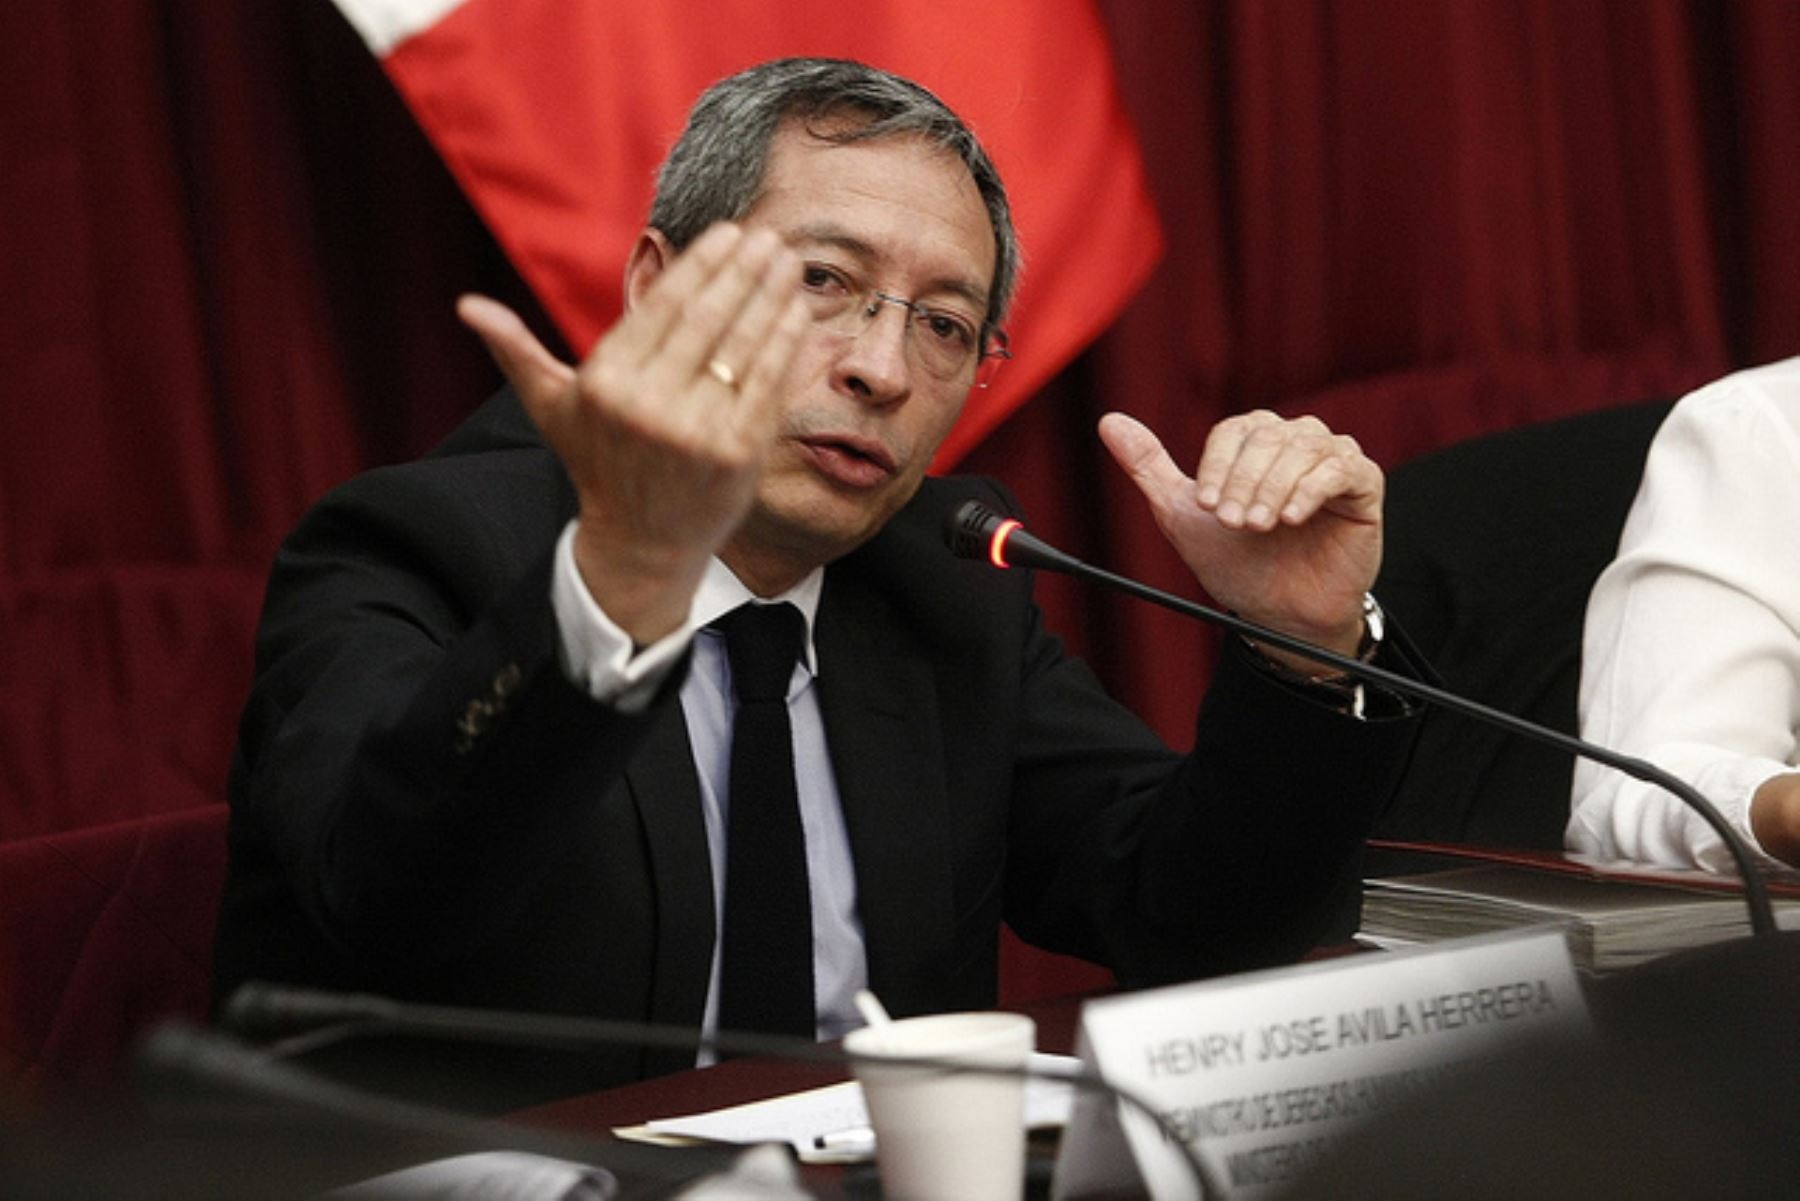 Portada: José Ávila Herrera es elegido presidente de la Junta Nacional de Justicia